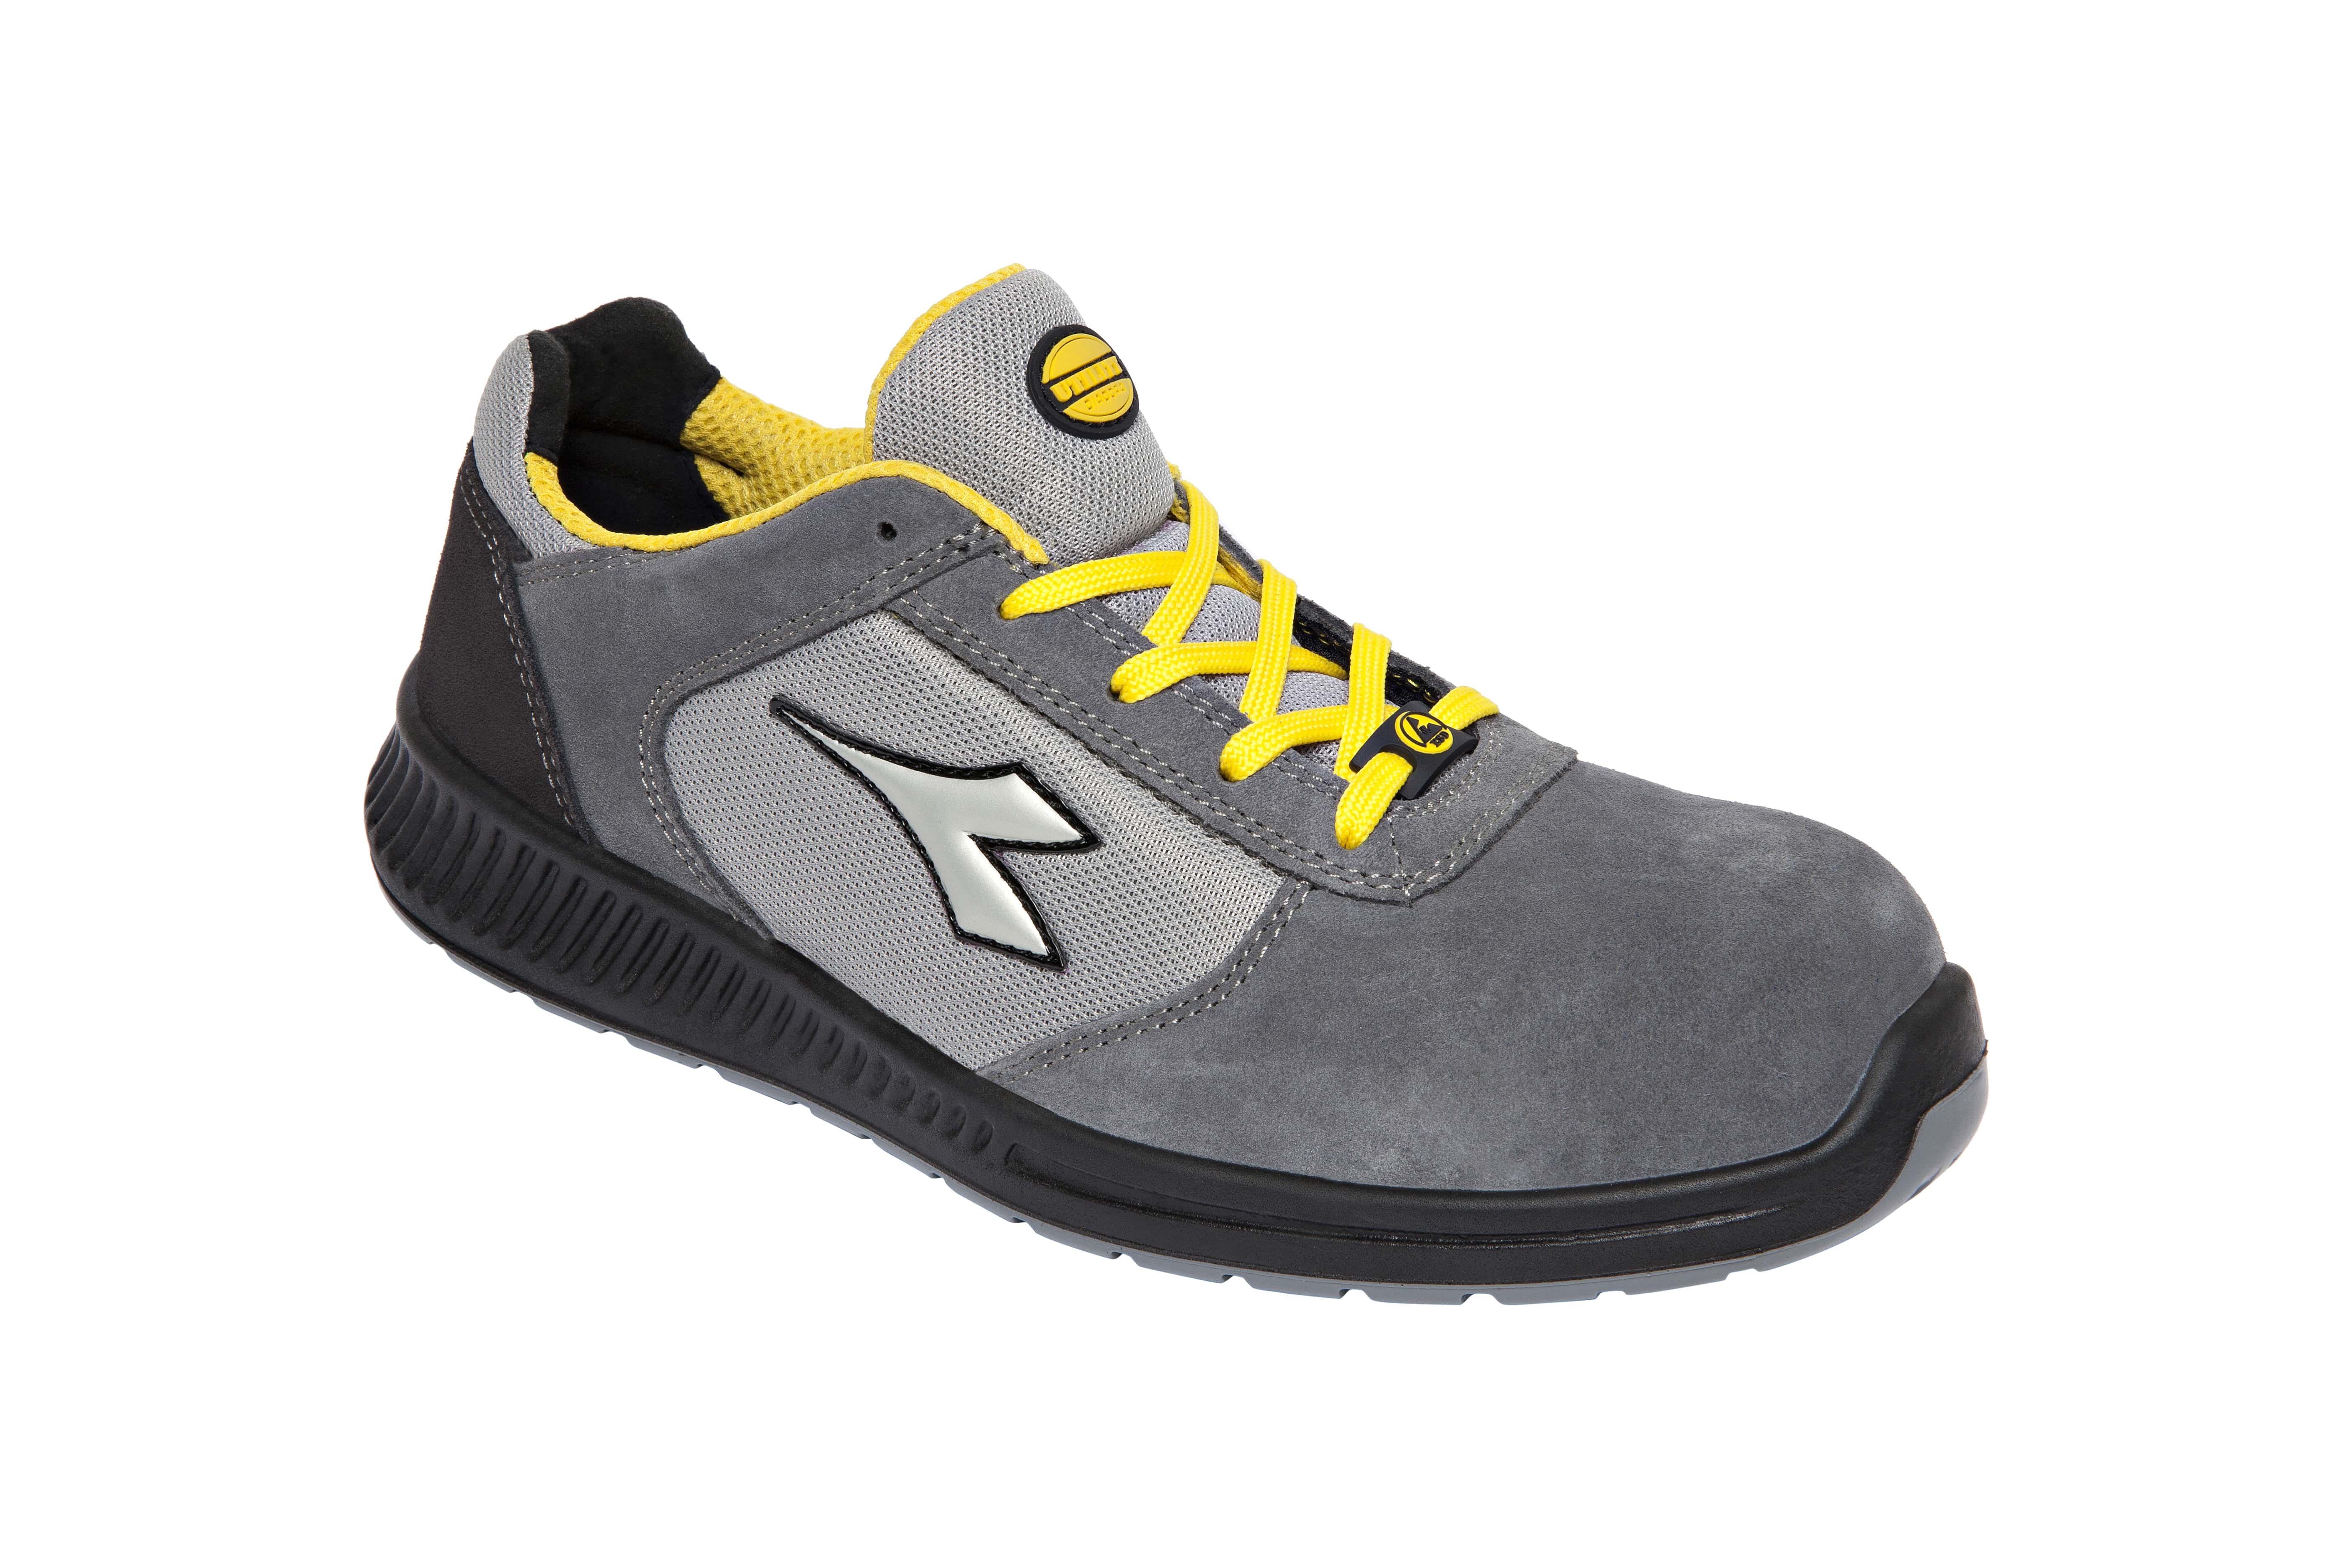 Zapatos de seguridad con puntera de fibra de vidrio | Comprar online zapatos seguridad | Calzado de Protección